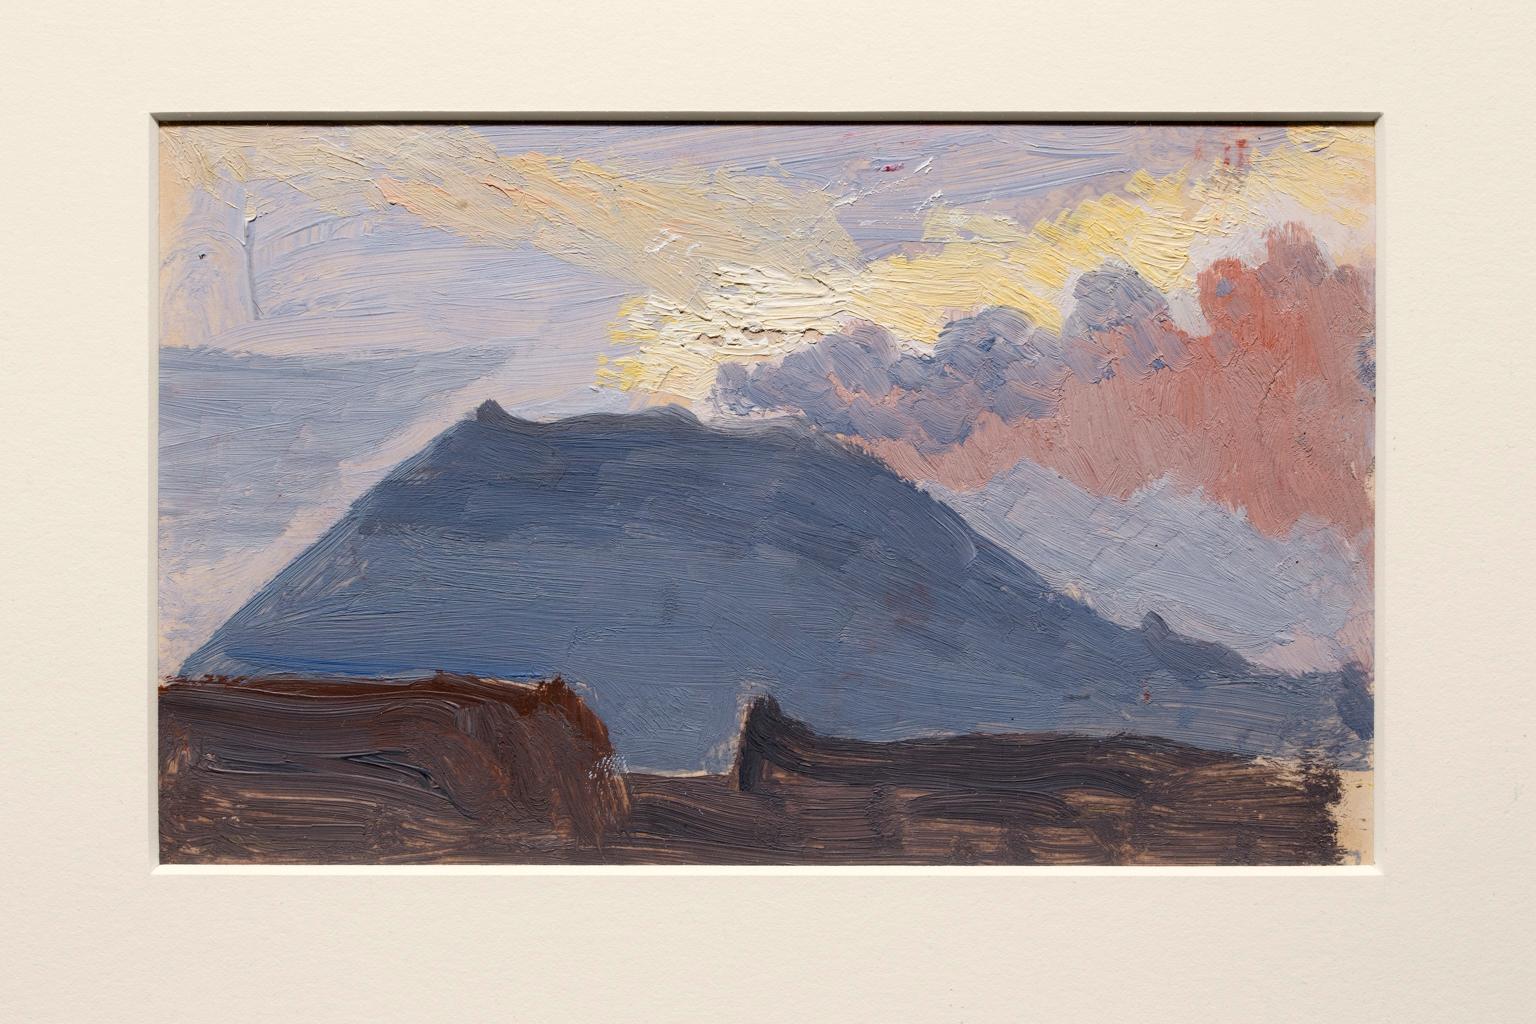 « Study of Mt. Vesuvius », huile sur toile, tons bleus, paysage - Painting de Joseph Stella